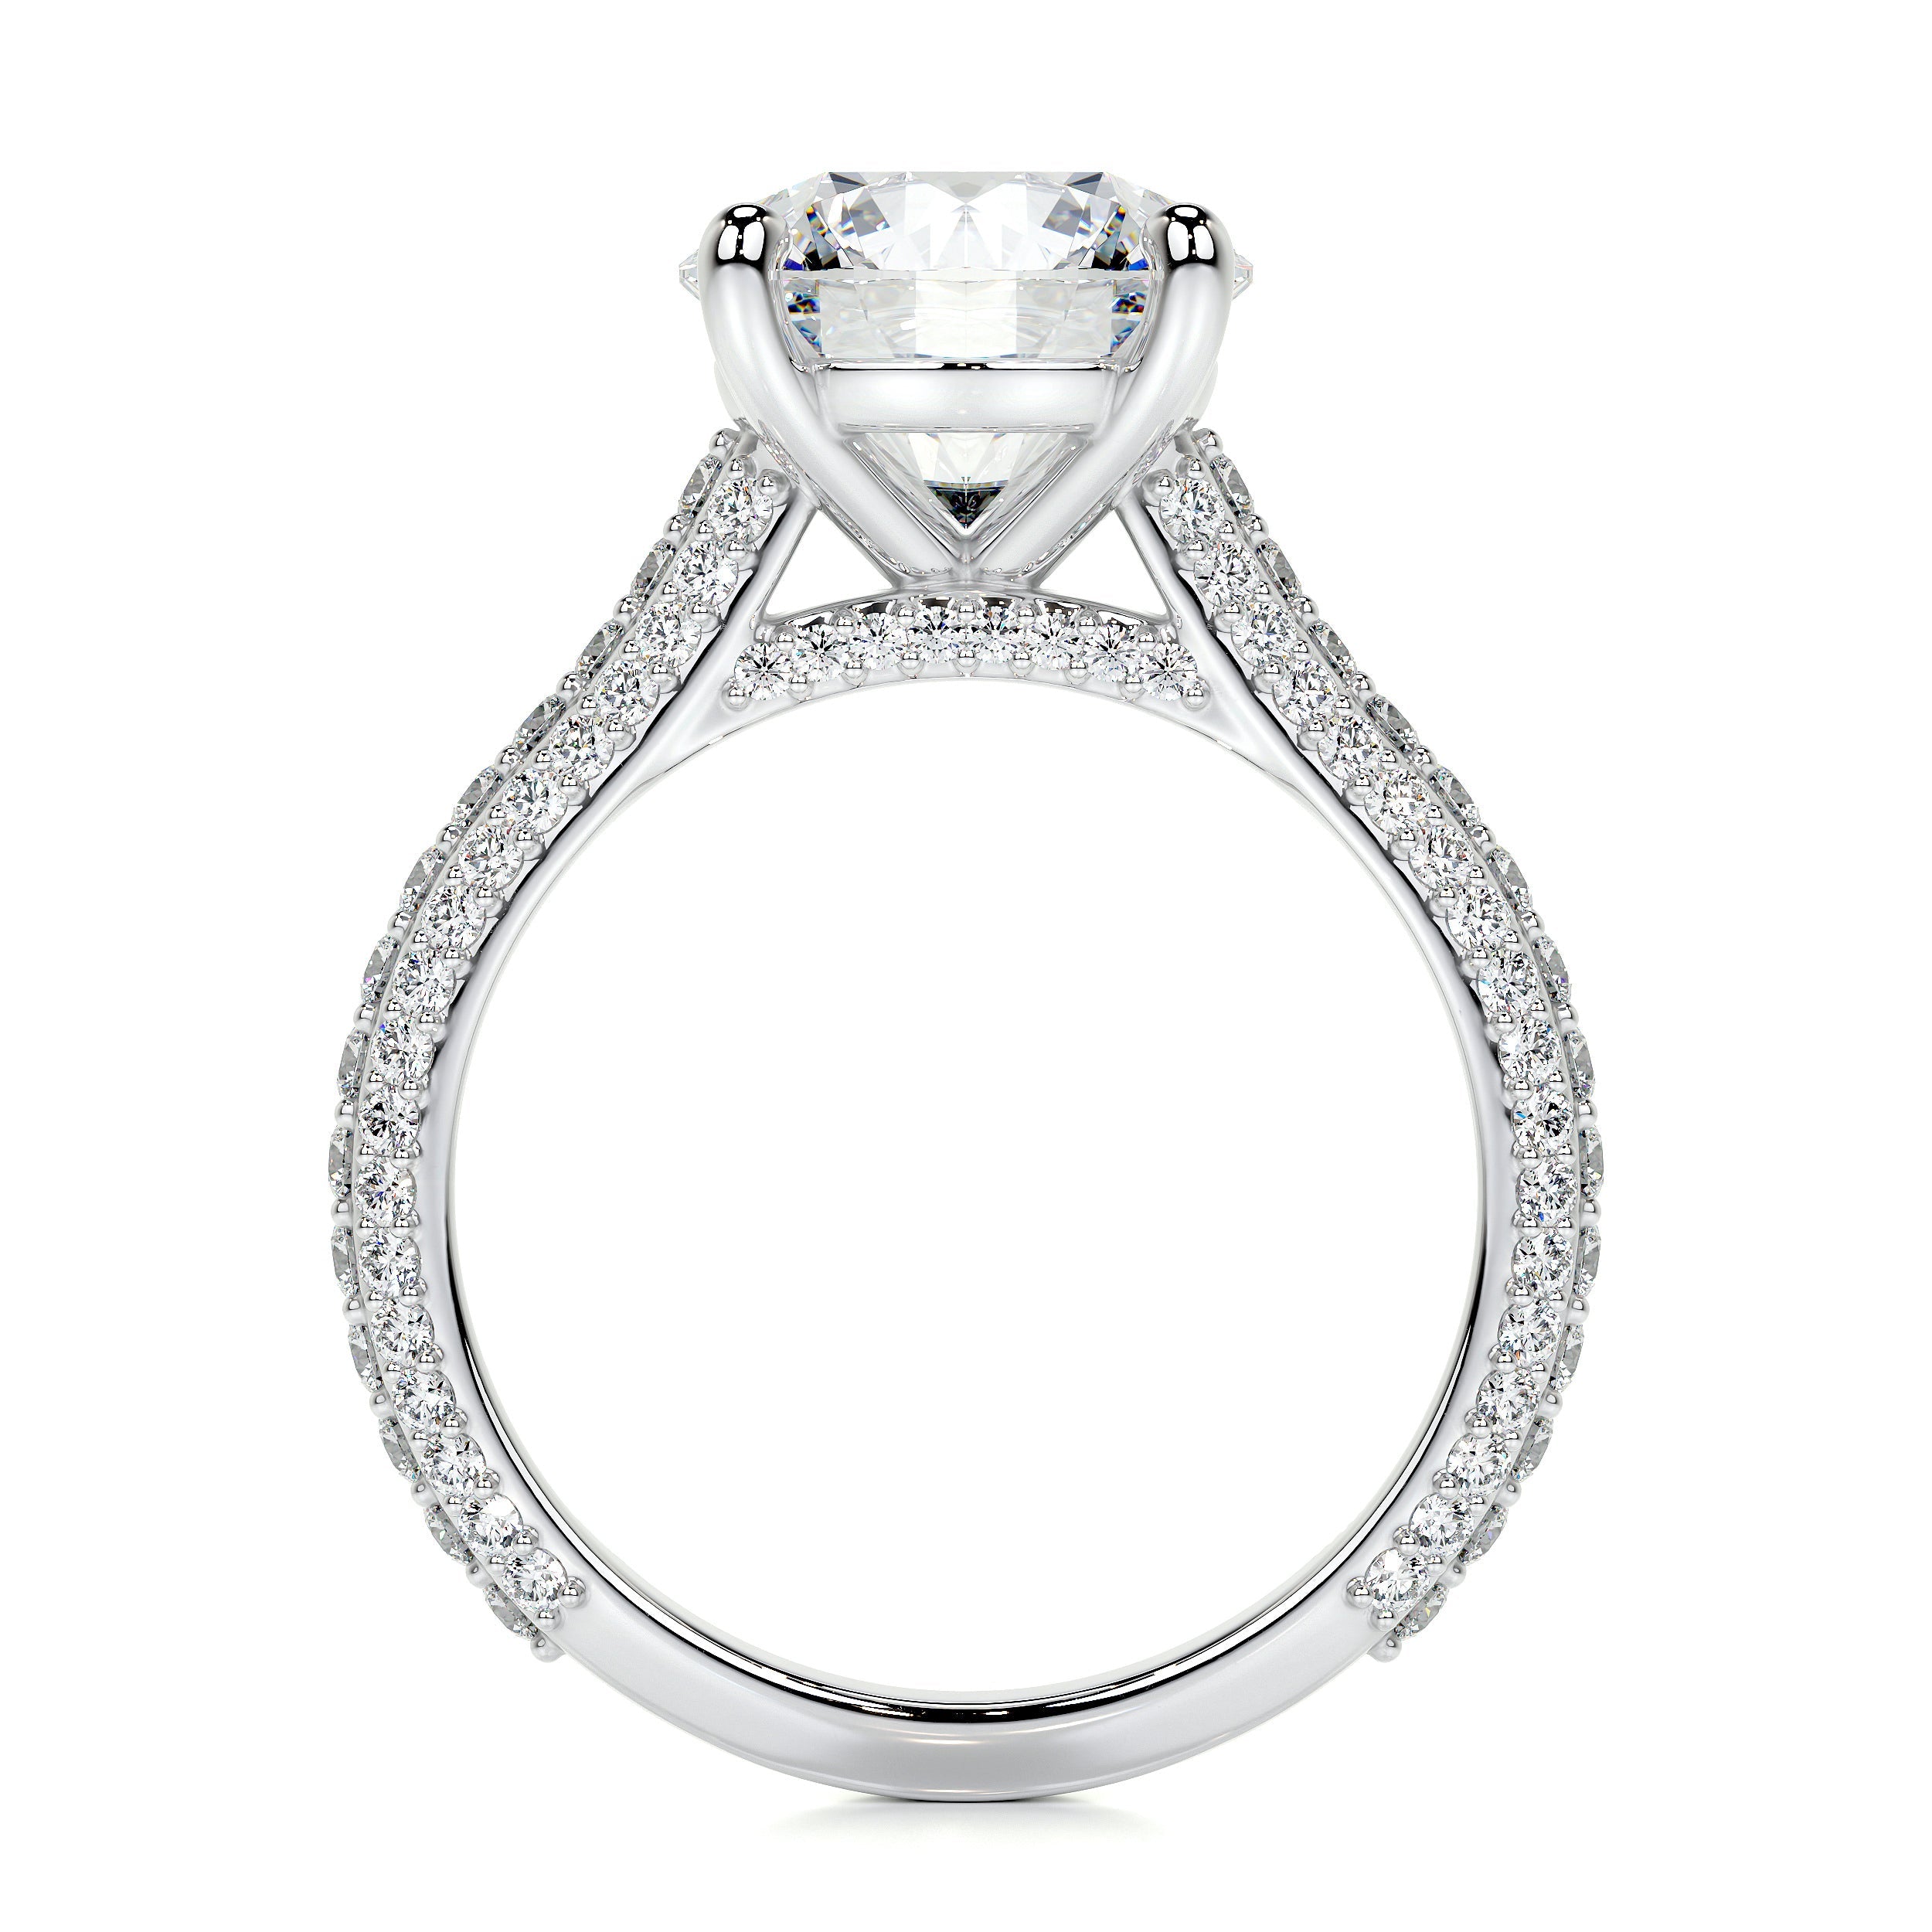 Janet Lab Grown Diamond Ring   (3.5 Carat) -14K White Gold